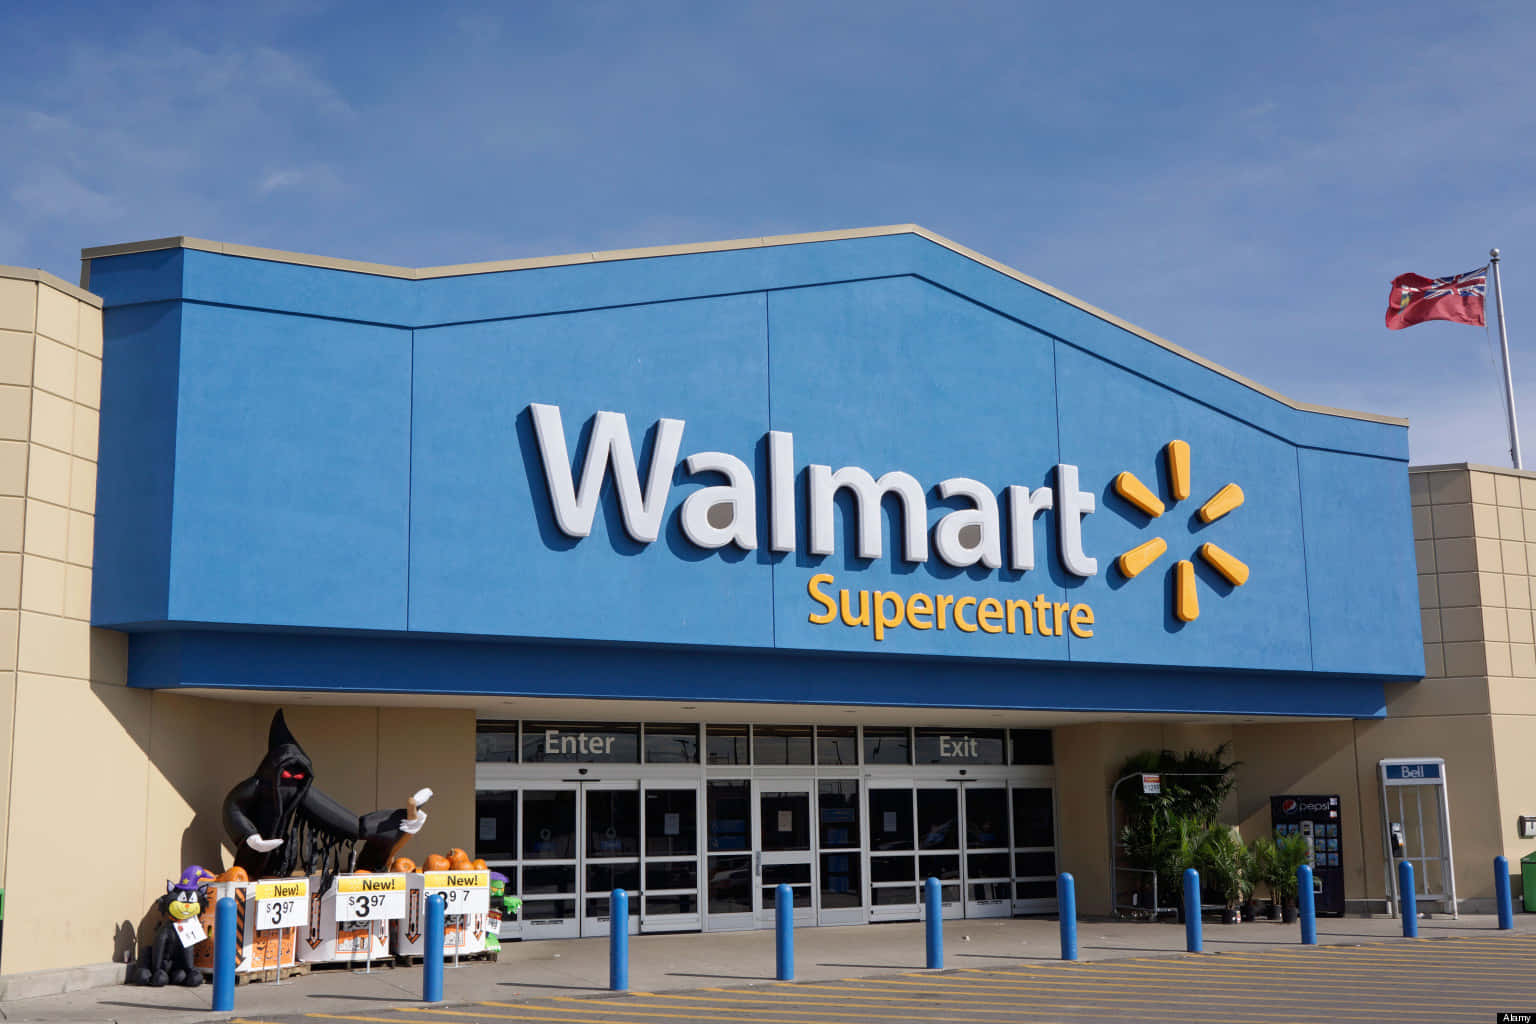 Walmartsupercenter In Einer Stadt Mit Einem Blauen Schild